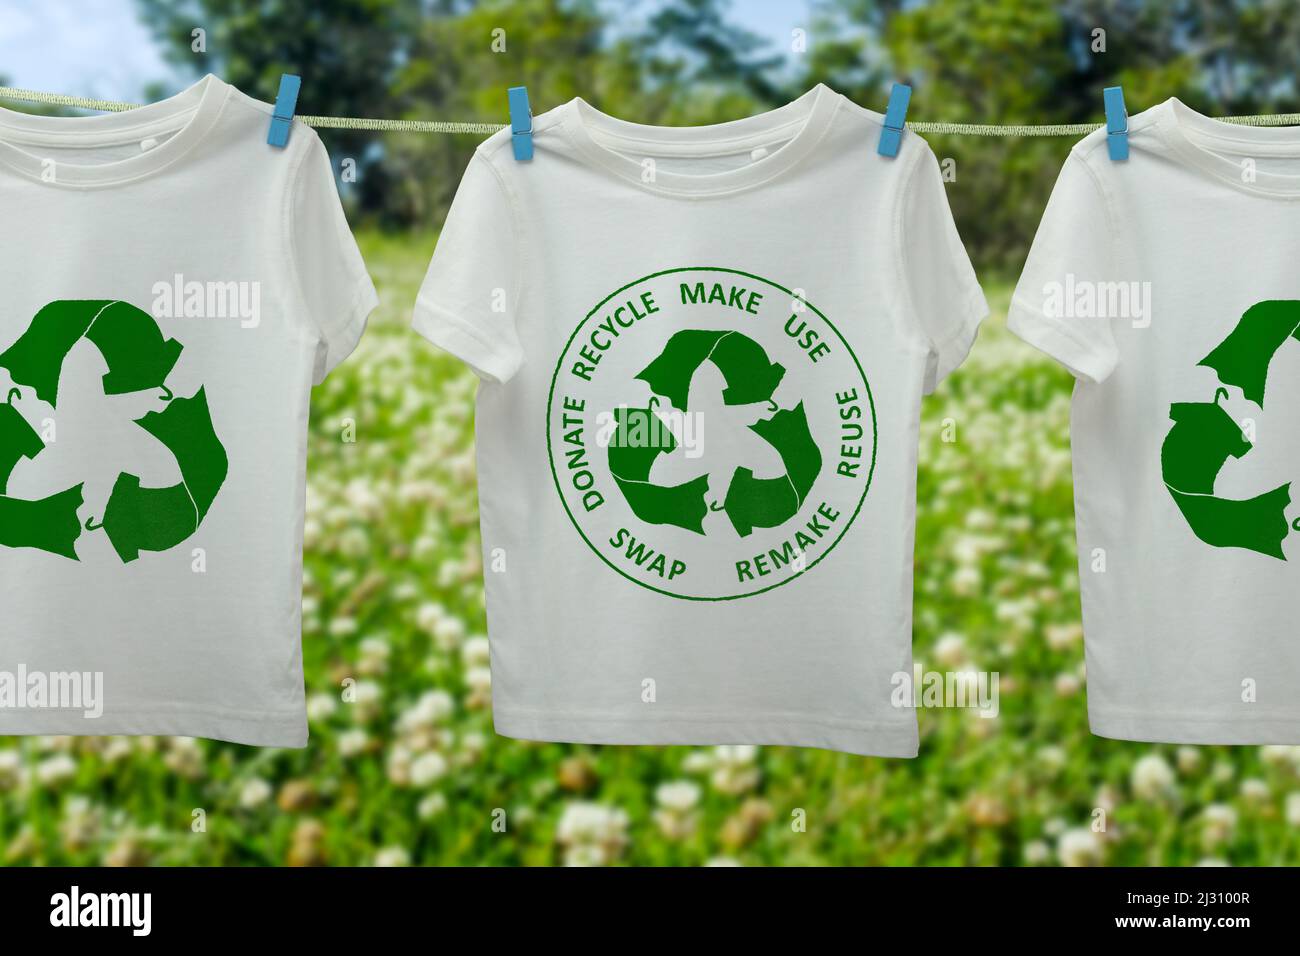 Icona tessile circolare economia sulle t-shirt on line, riutilizzo sostenibile concetto di moda, riciclaggio abiti e tessuti per ridurre i rifiuti Foto Stock